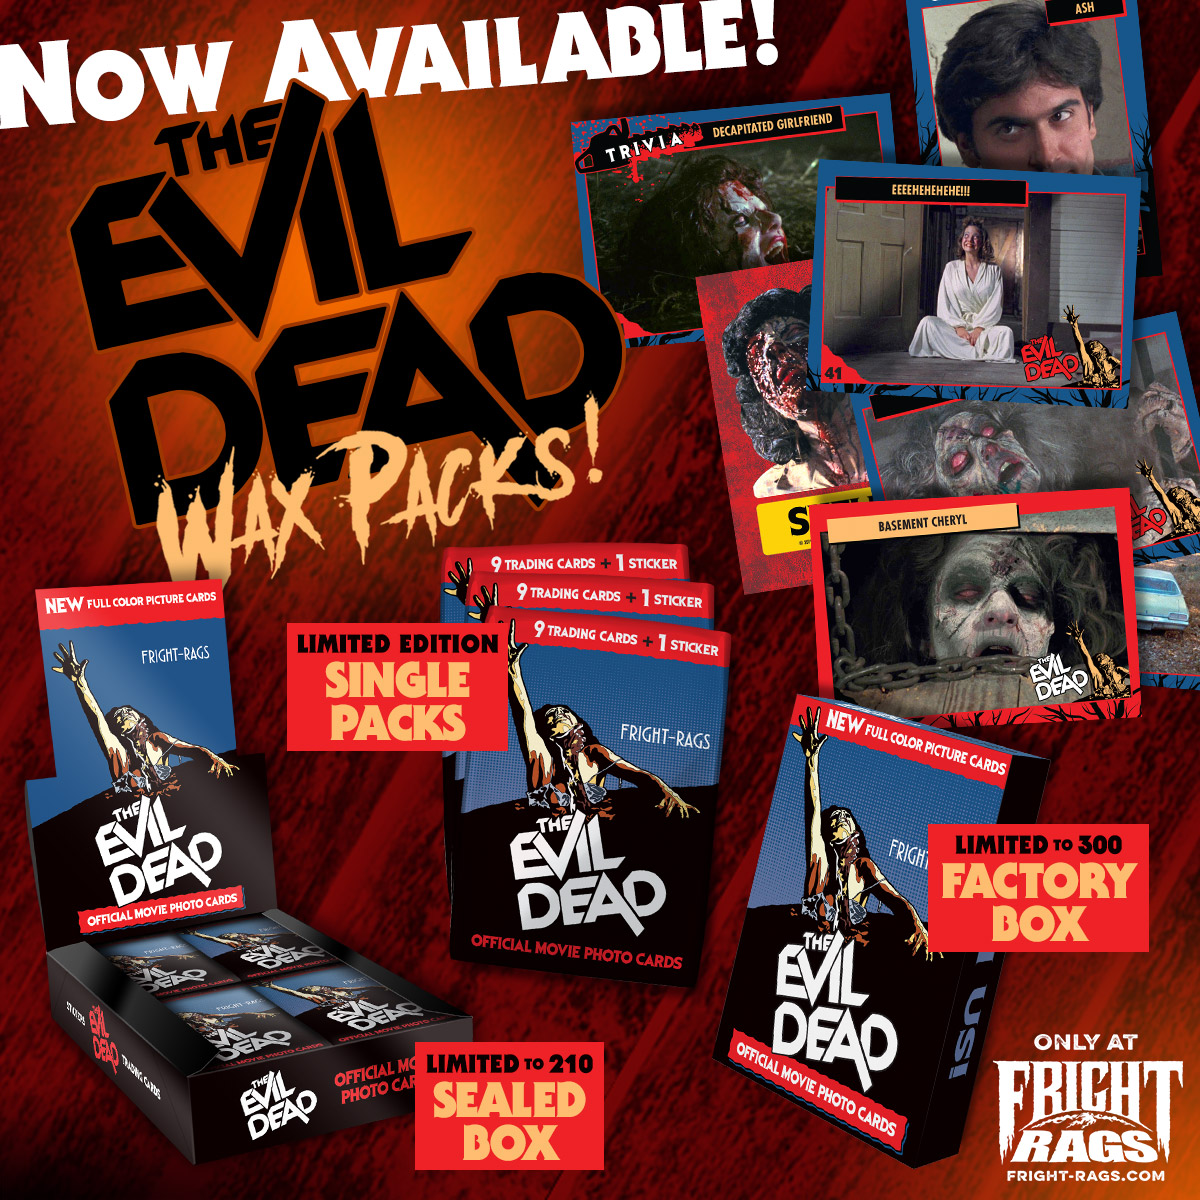 Evil Dead Wax Packs